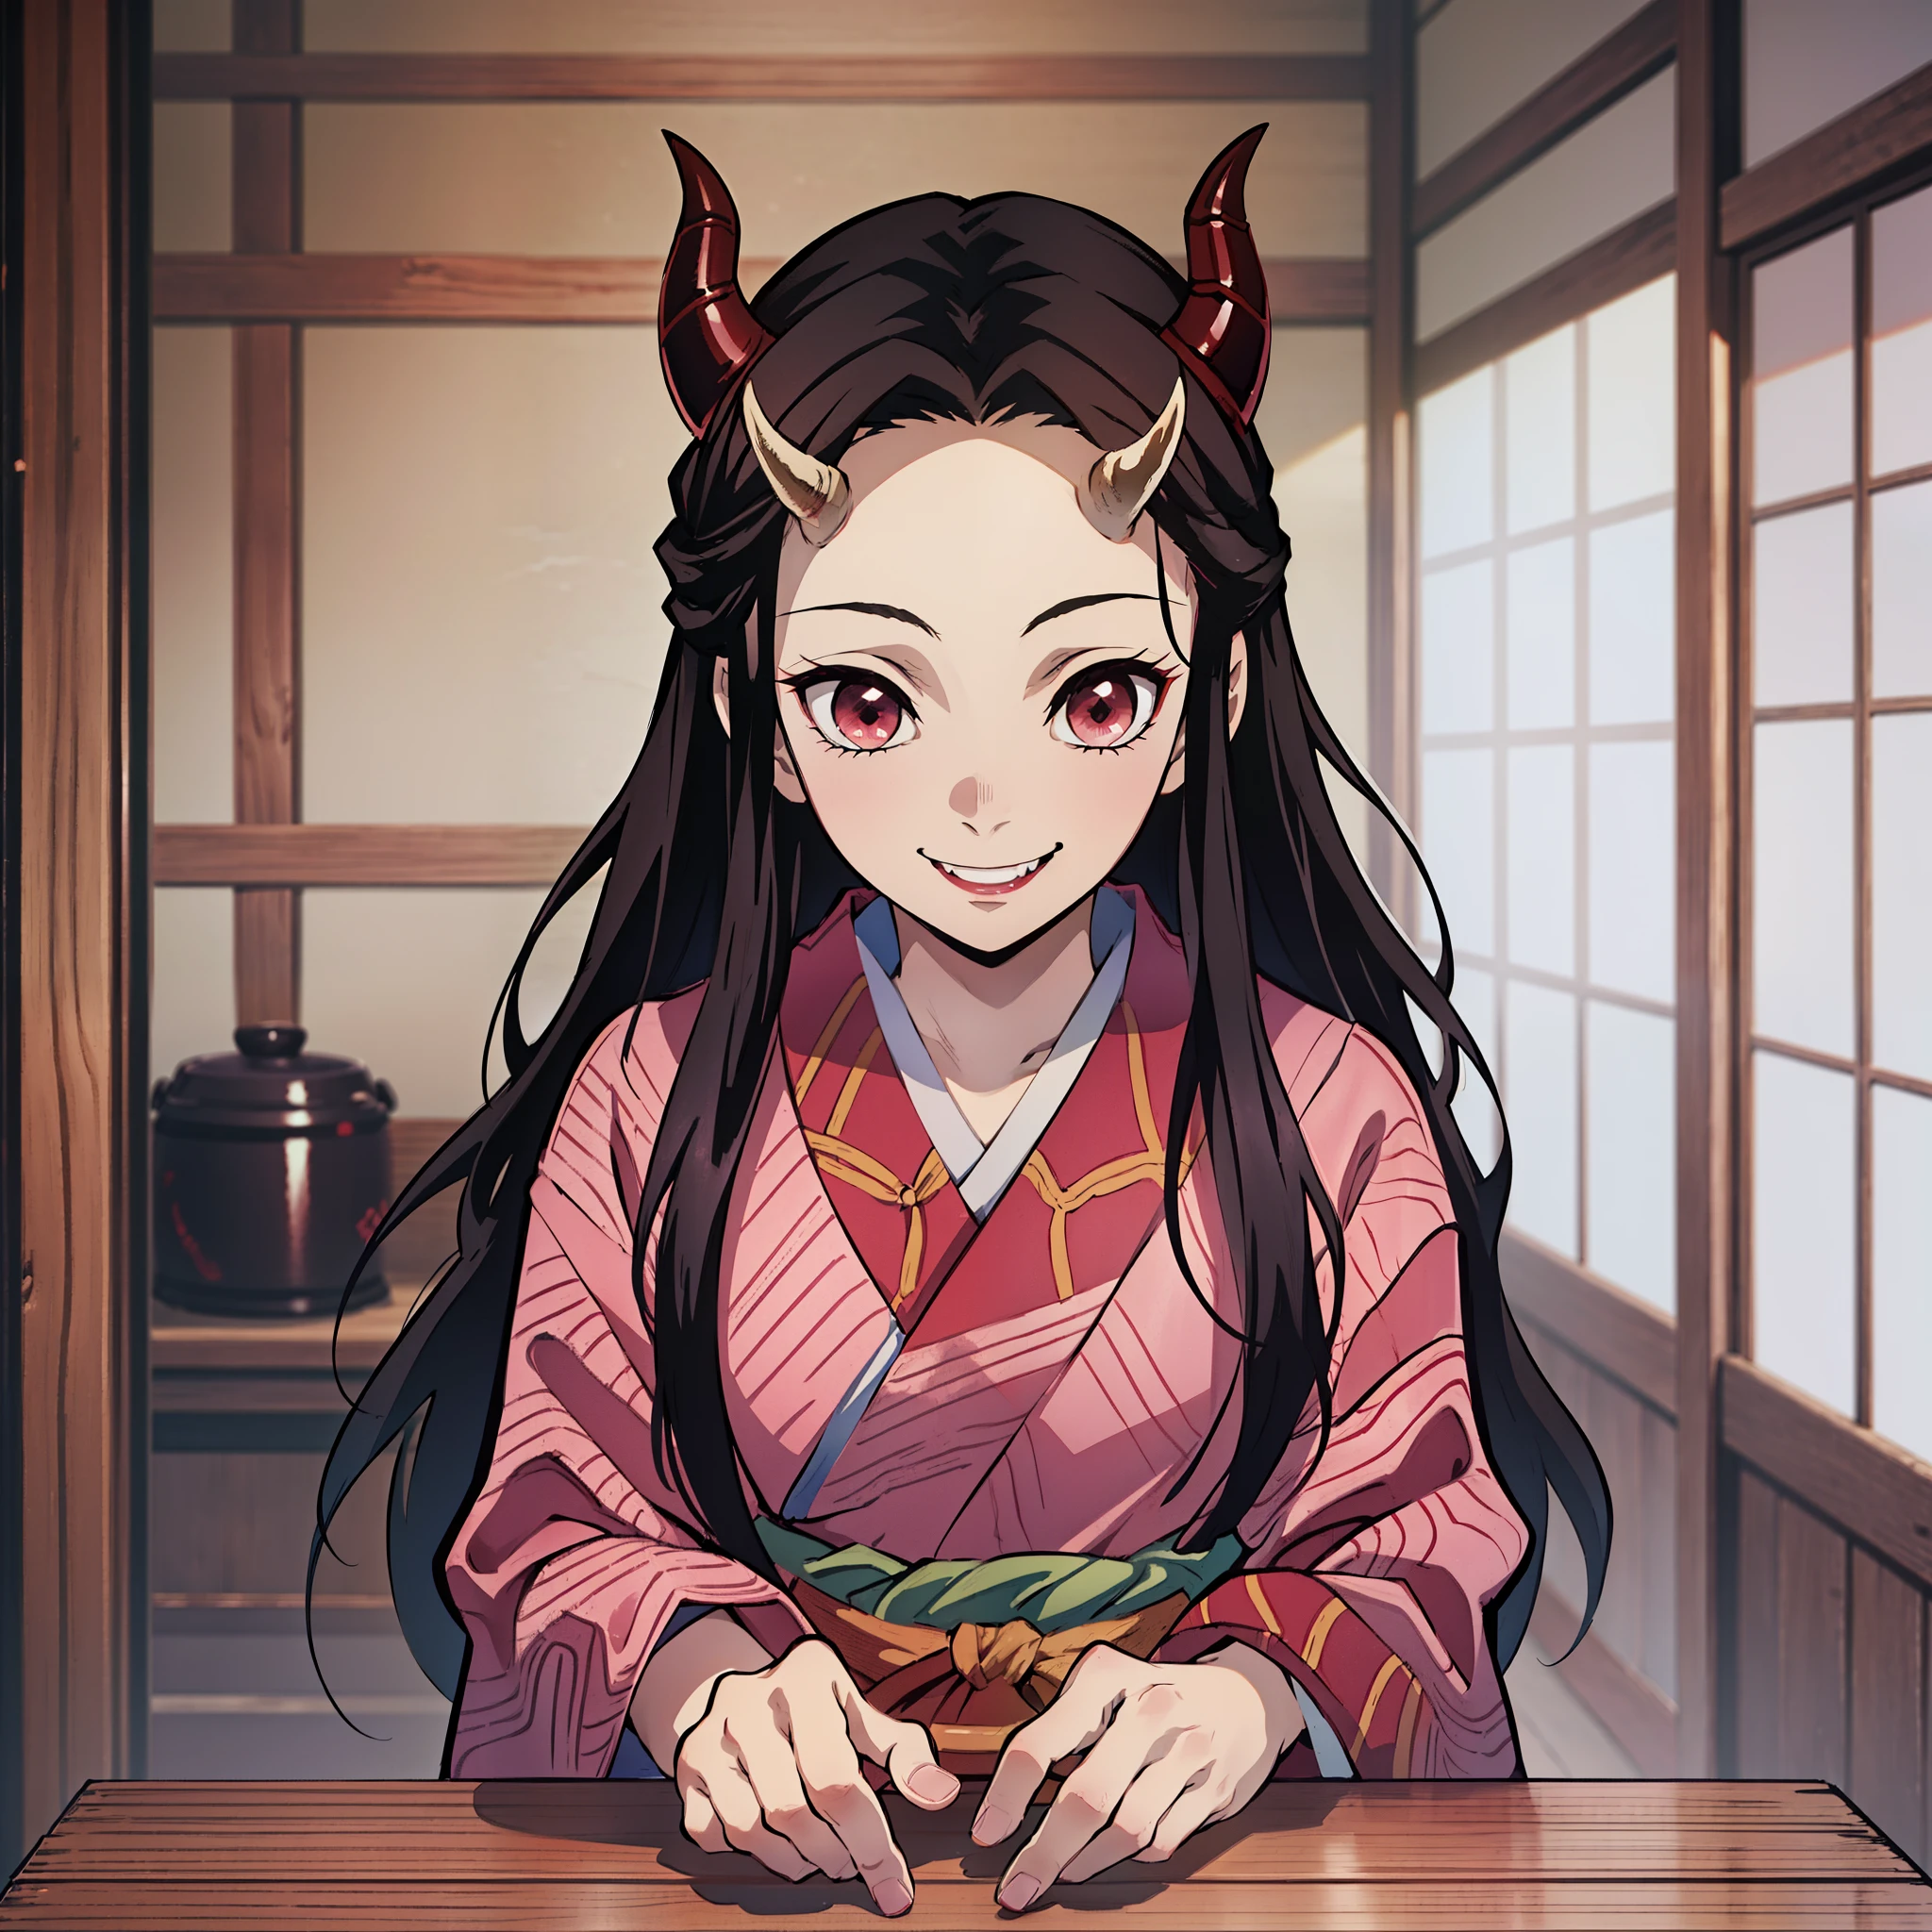 (dessus de la table, Meilleure qualité:1.2), À la manière de Kimetsu no Yaiba, Kamado Nezuko, (1 fille dans, seulement), 18 ans, haut du corps, kimono rose, (cheveux longs noirs, cheveux ondulés), front, (cornes de démon rouges, les yeux rouges), (Sourire démoniaque:1.2), longs crocs, doigt de signe de victoire, Table en bois